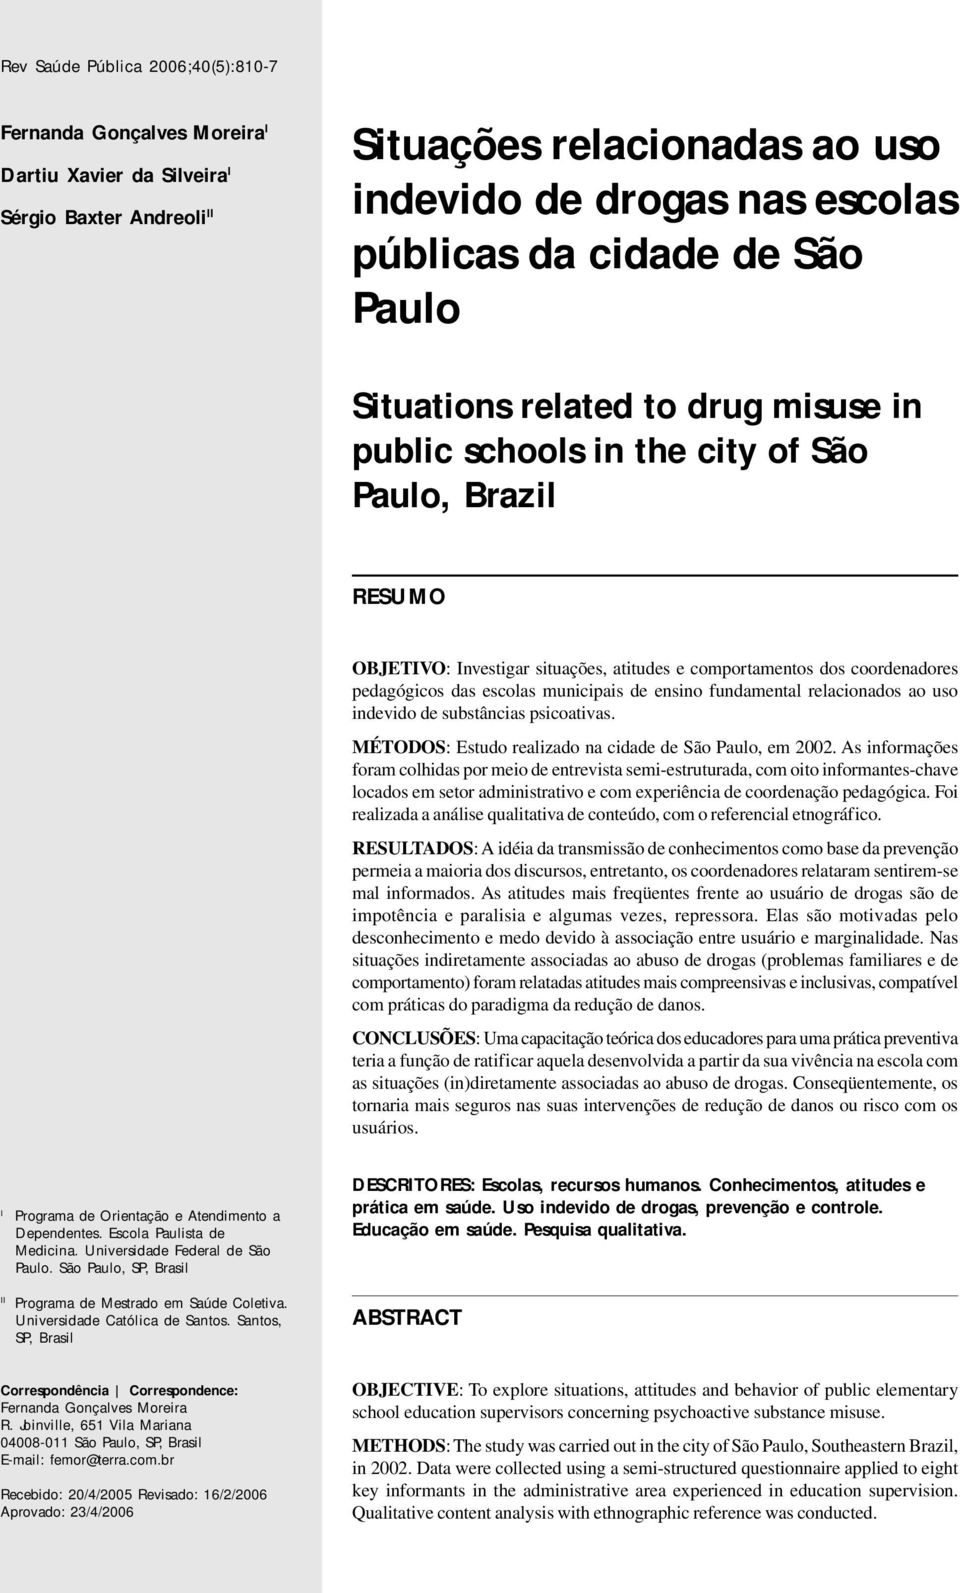 das escolas municipais de ensino fundamental relacionados ao uso indevido de substâncias psicoativas. MÉTODOS: Estudo realizado na cidade de São Paulo, em 2002.